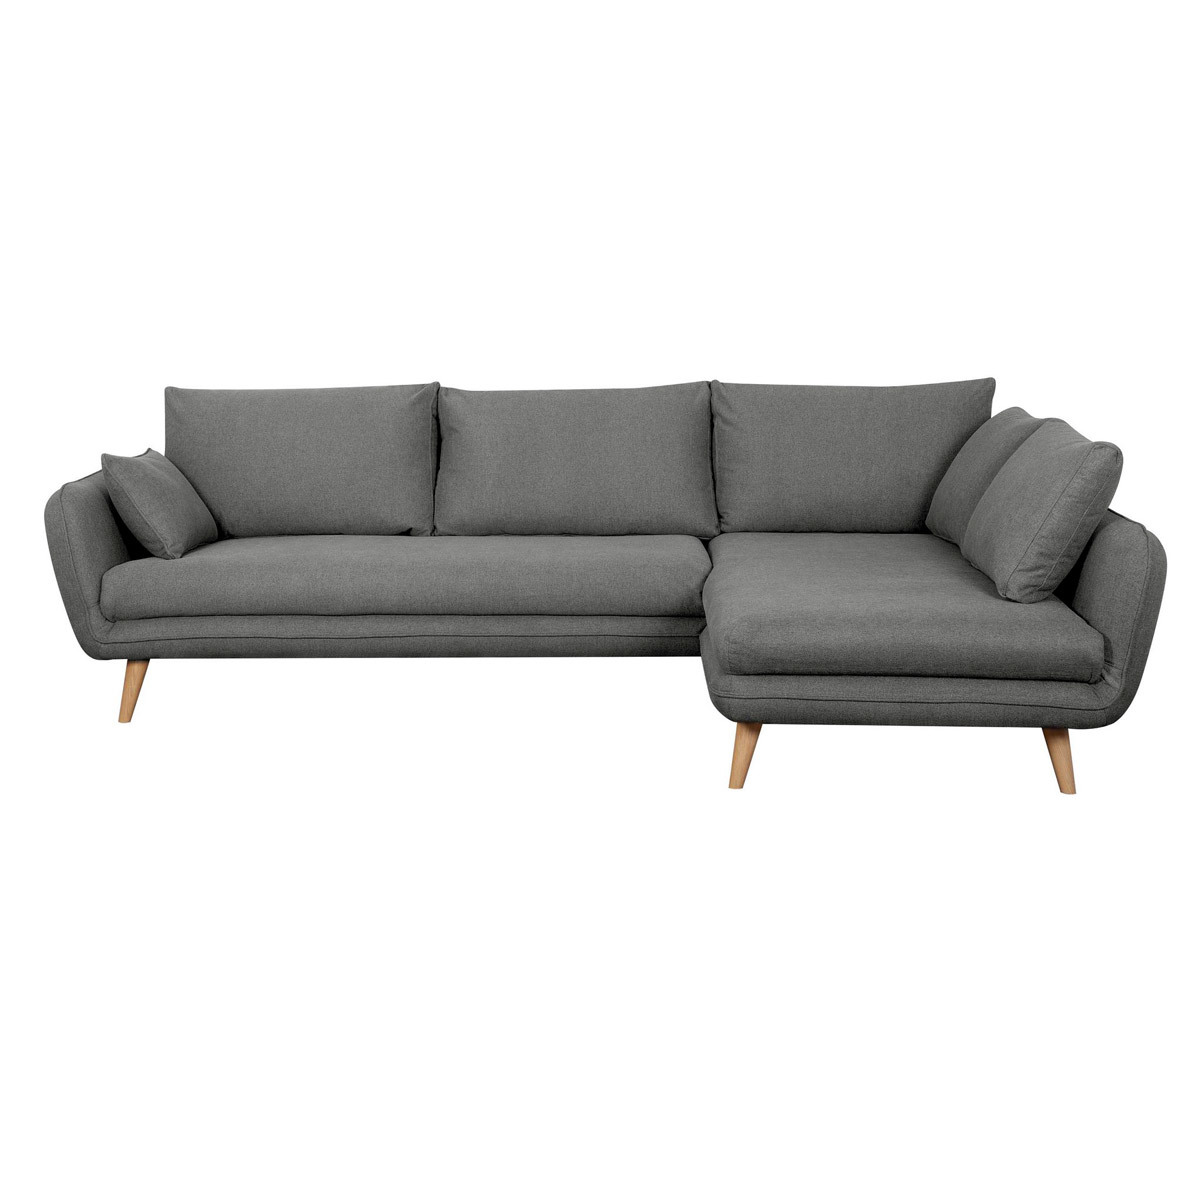 Canapé d'angle droit scandinave 5 places en tissu gris anthracite et bois clair CREEP vue1